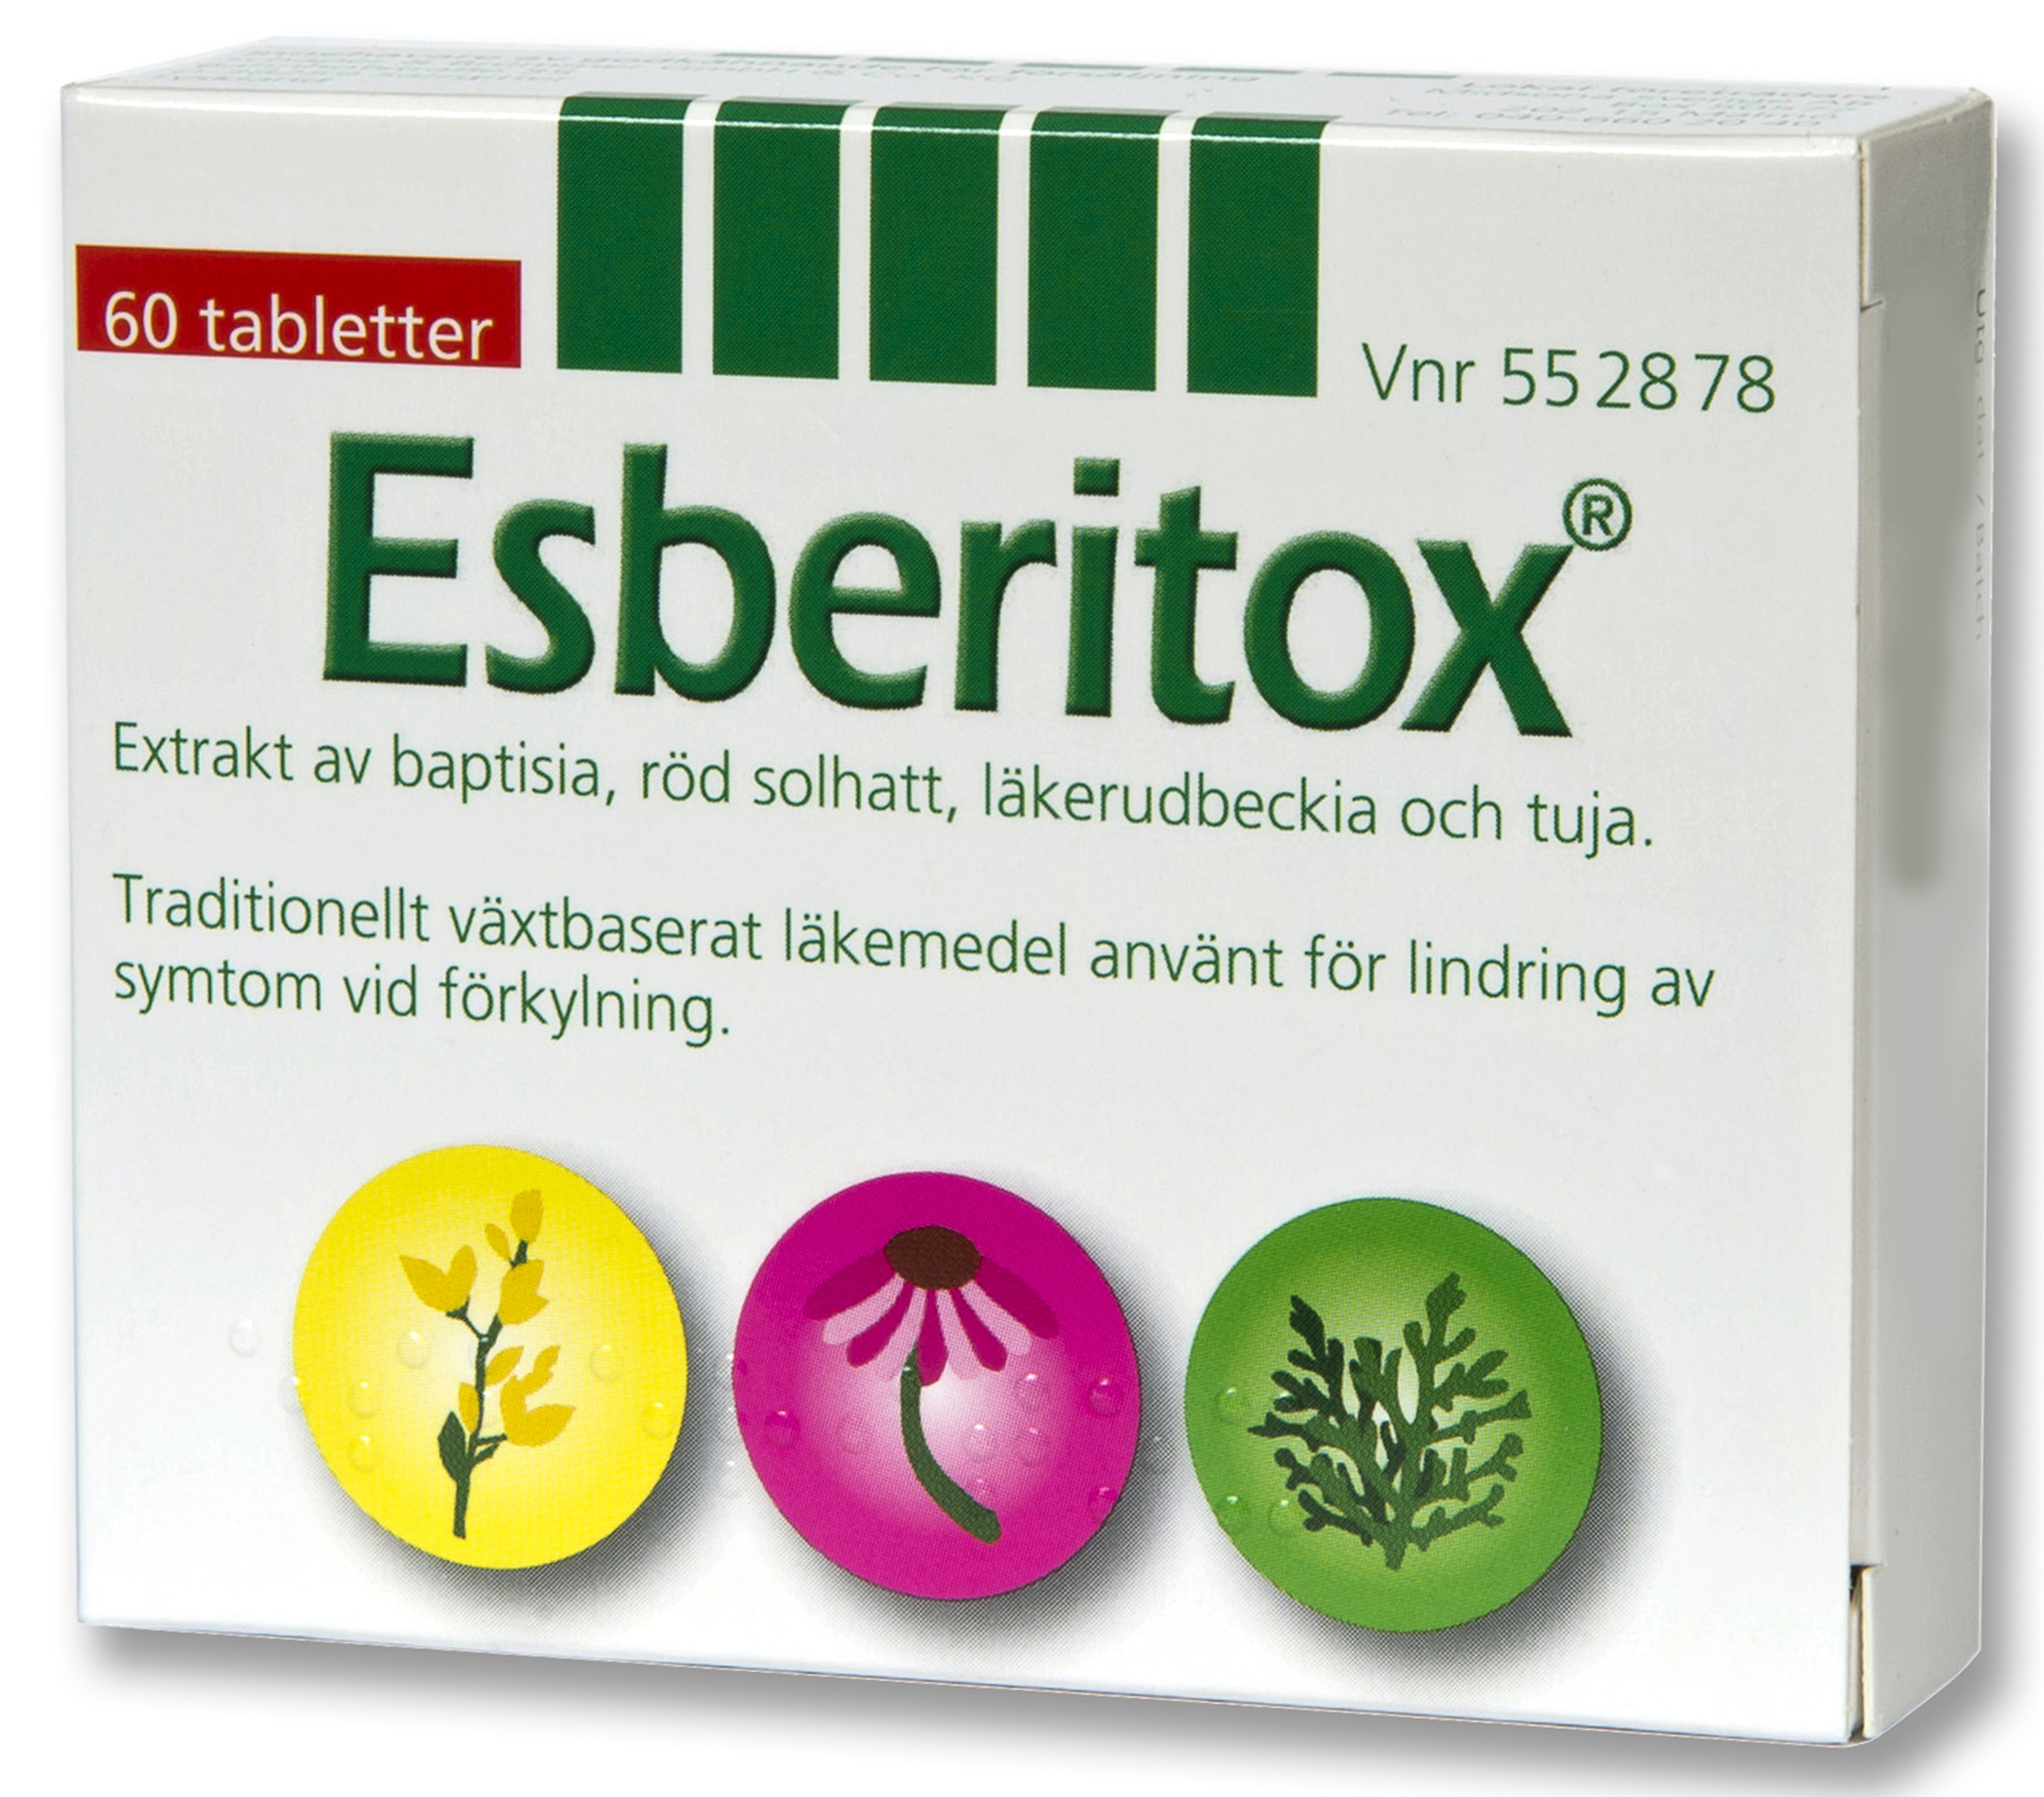 Esberitox Tablett Blister, 60stycken